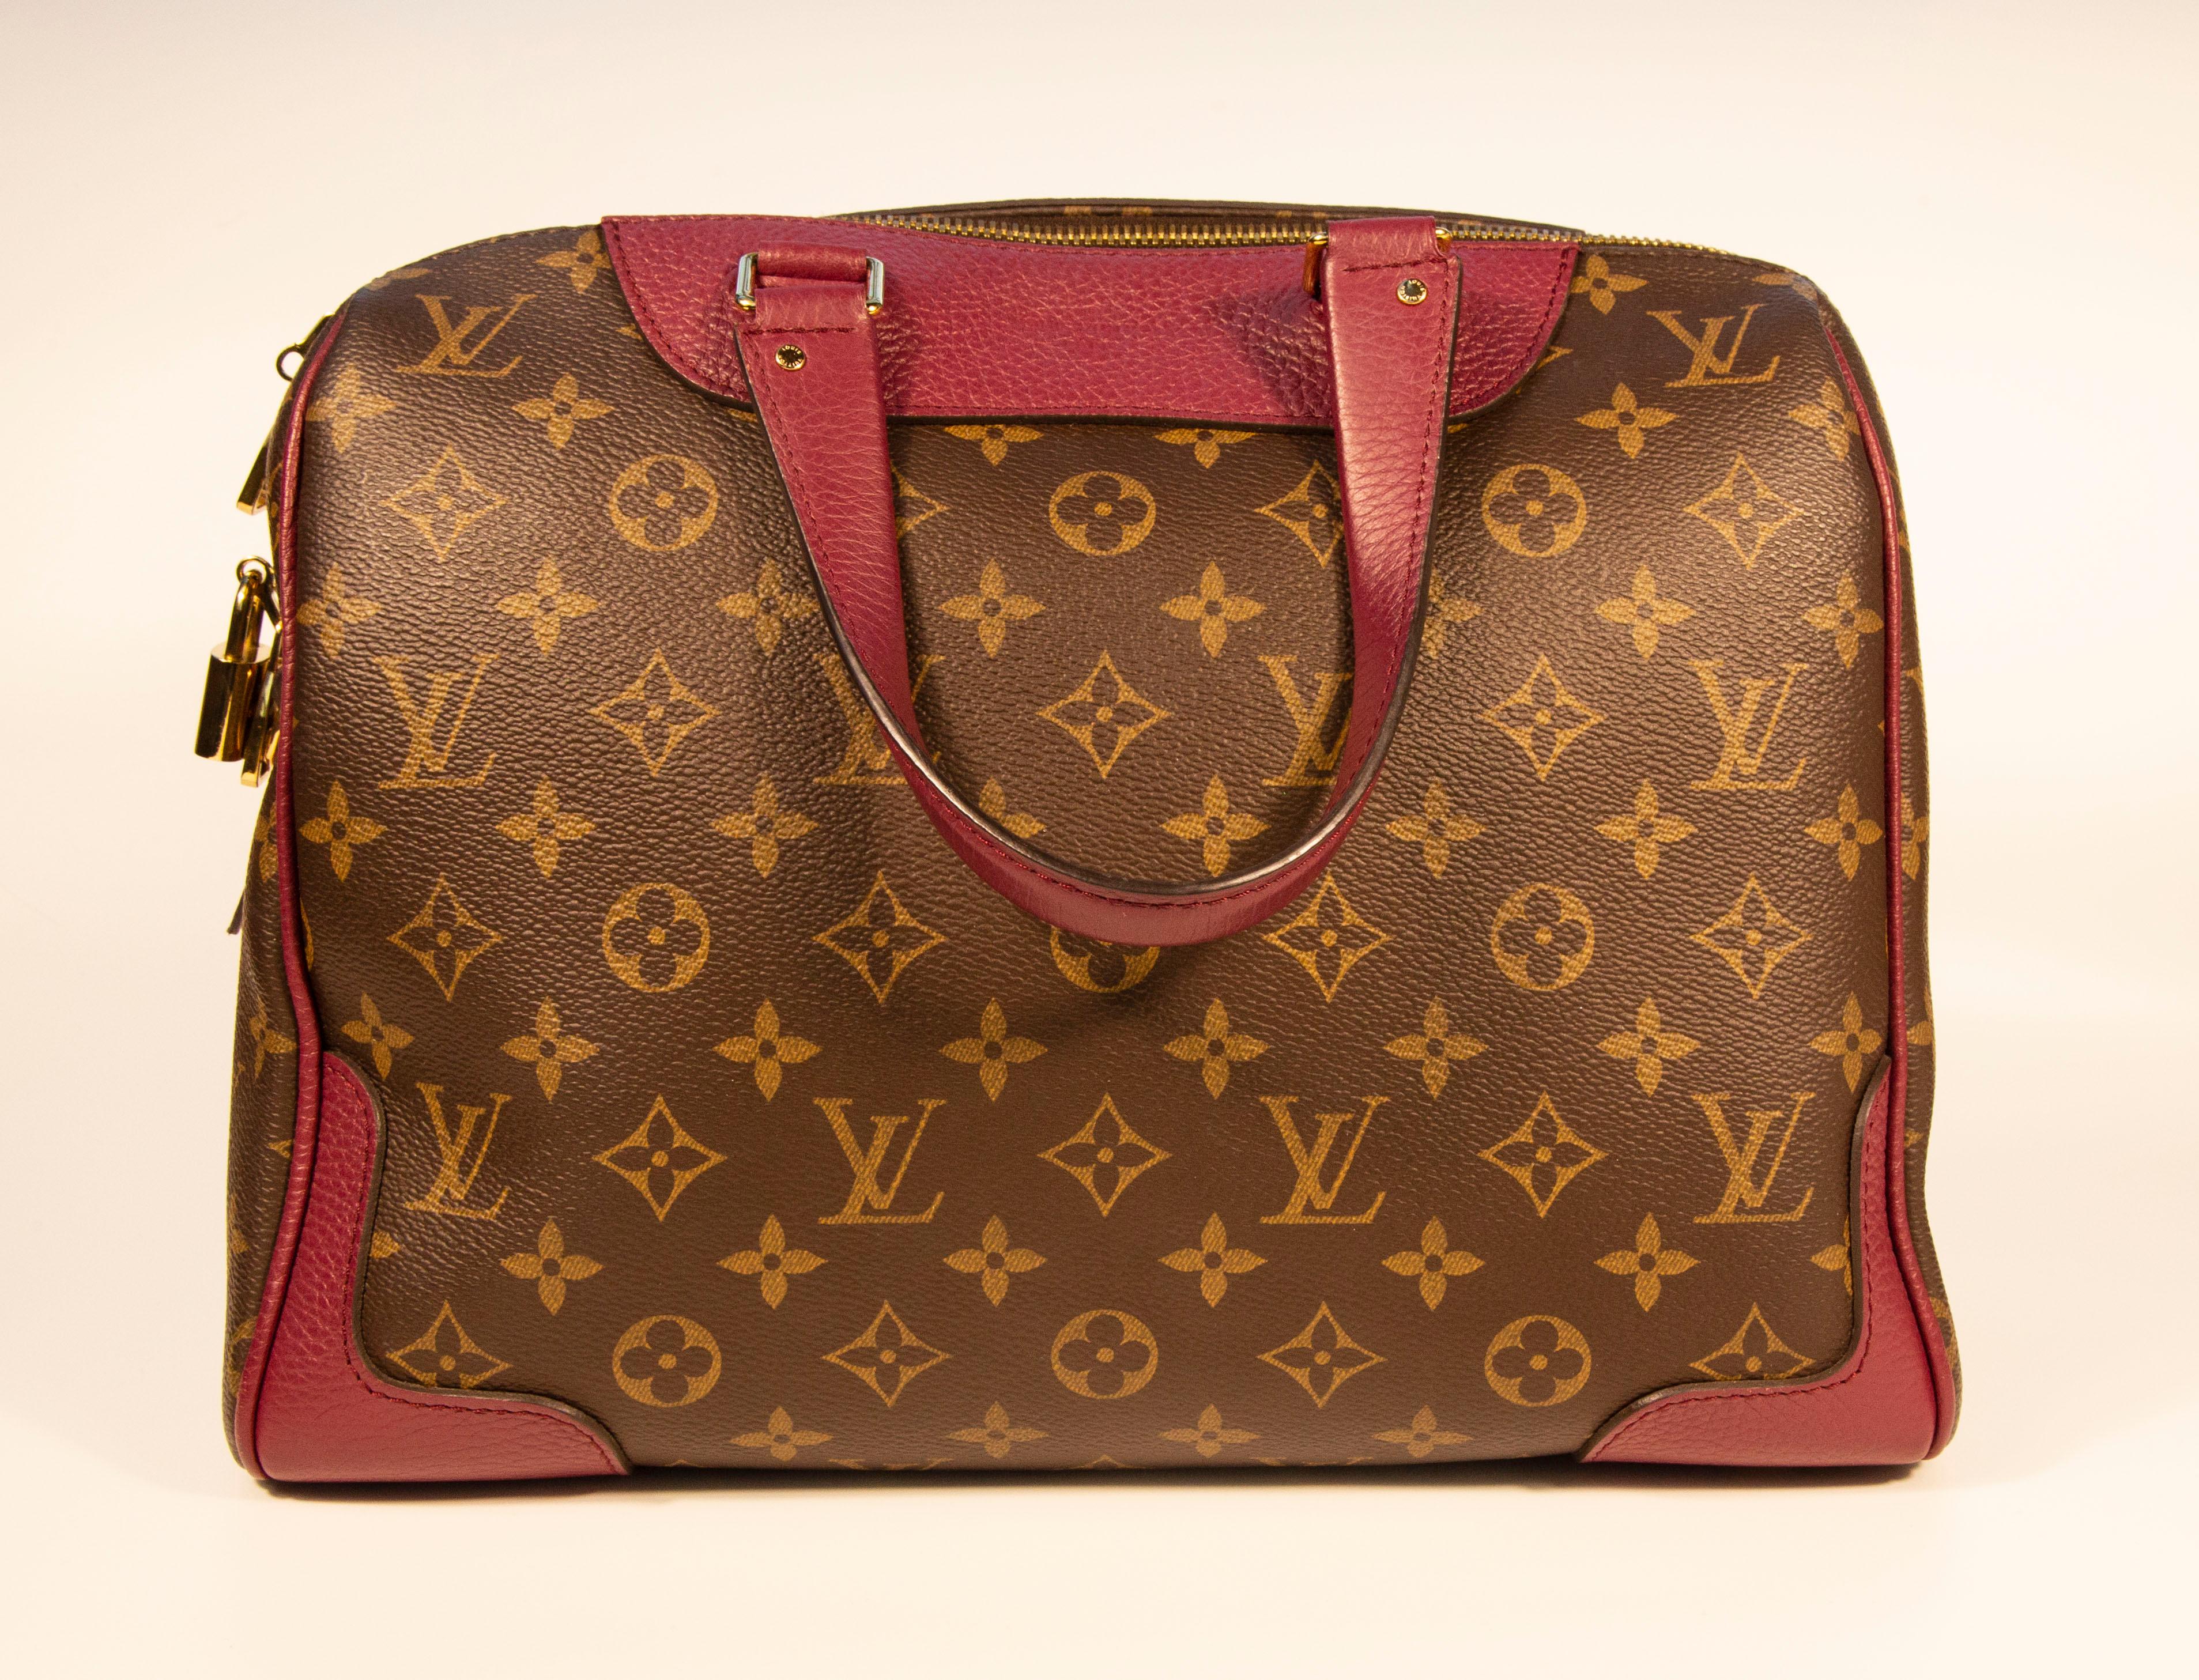 Louis Vuitton Retiro NM Monogram Canvas 2-Wege-Umhängetasche. Die Tasche besteht aus braunem Canvas mit Monogrammen, burgunderrotem Leder und goldfarbenen Beschlägen. Der Innenraum ist mit bordeauxfarbenem Stoff ausgekleidet und verfügt neben dem